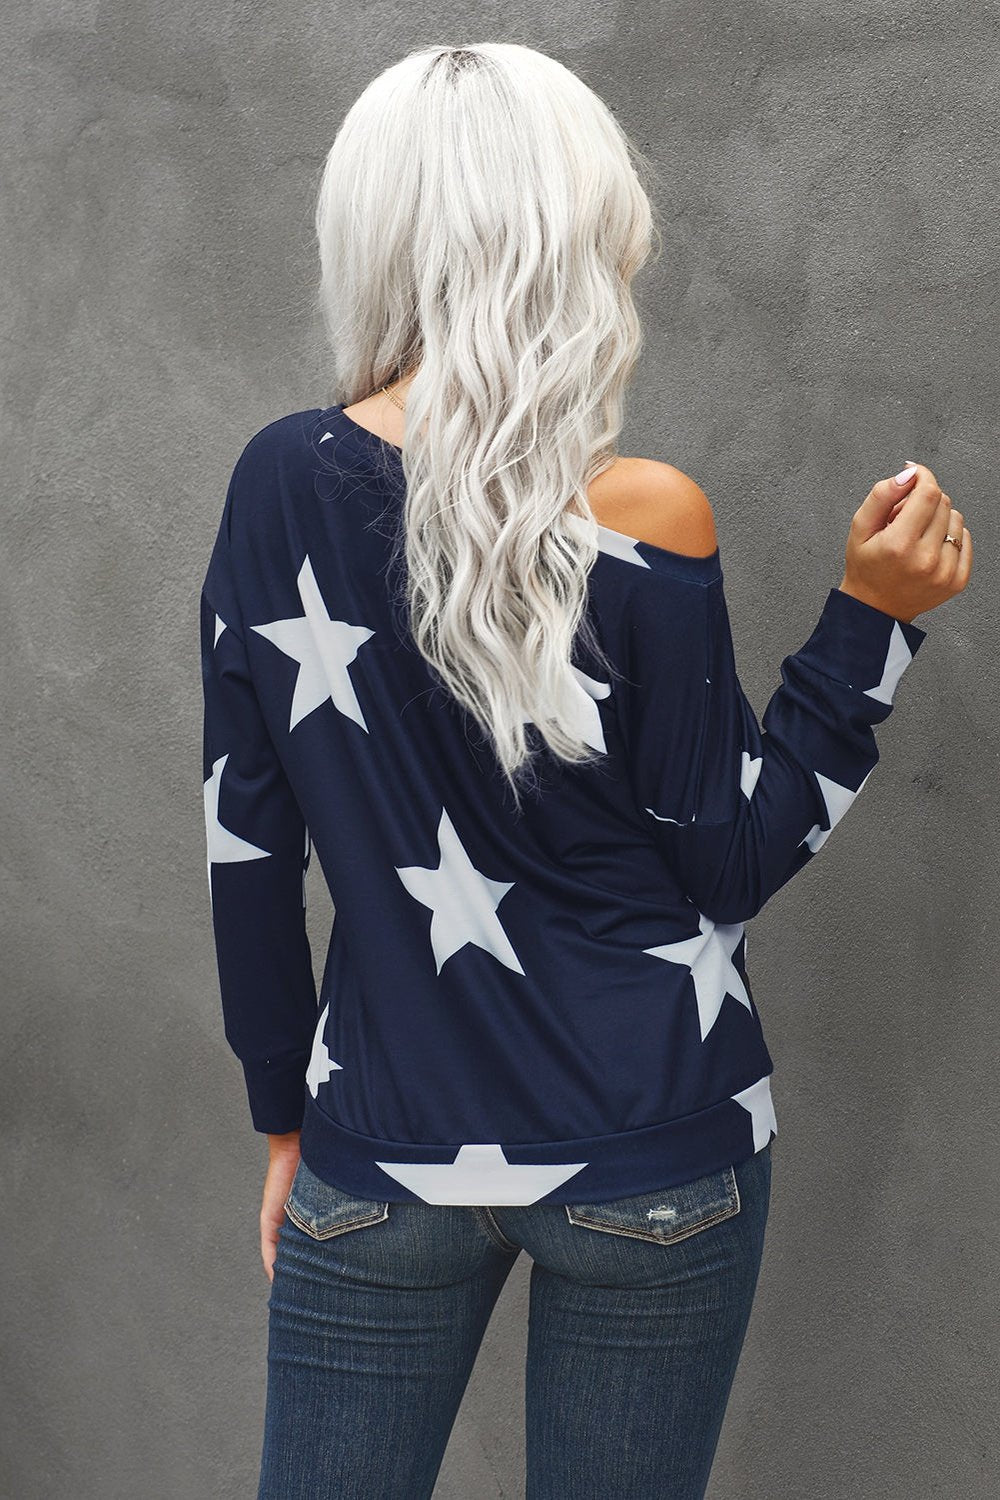 Star Print Long Sleeve Sweatshirt - Sweatshirts & Hoodies - FITGGINS